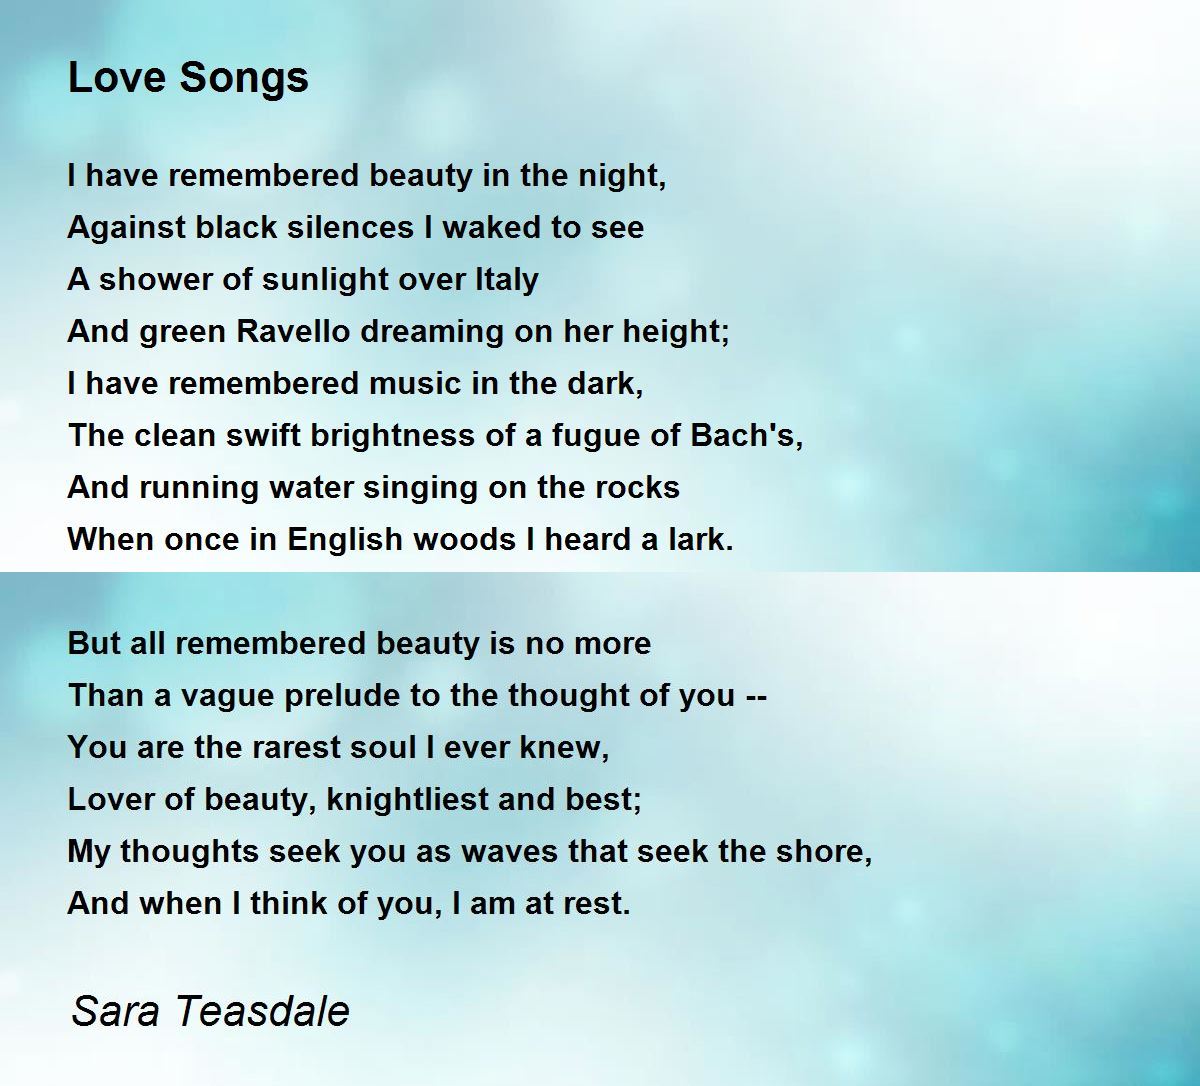 Love Songs Poem by Sara Teasdale - Poem Hunter